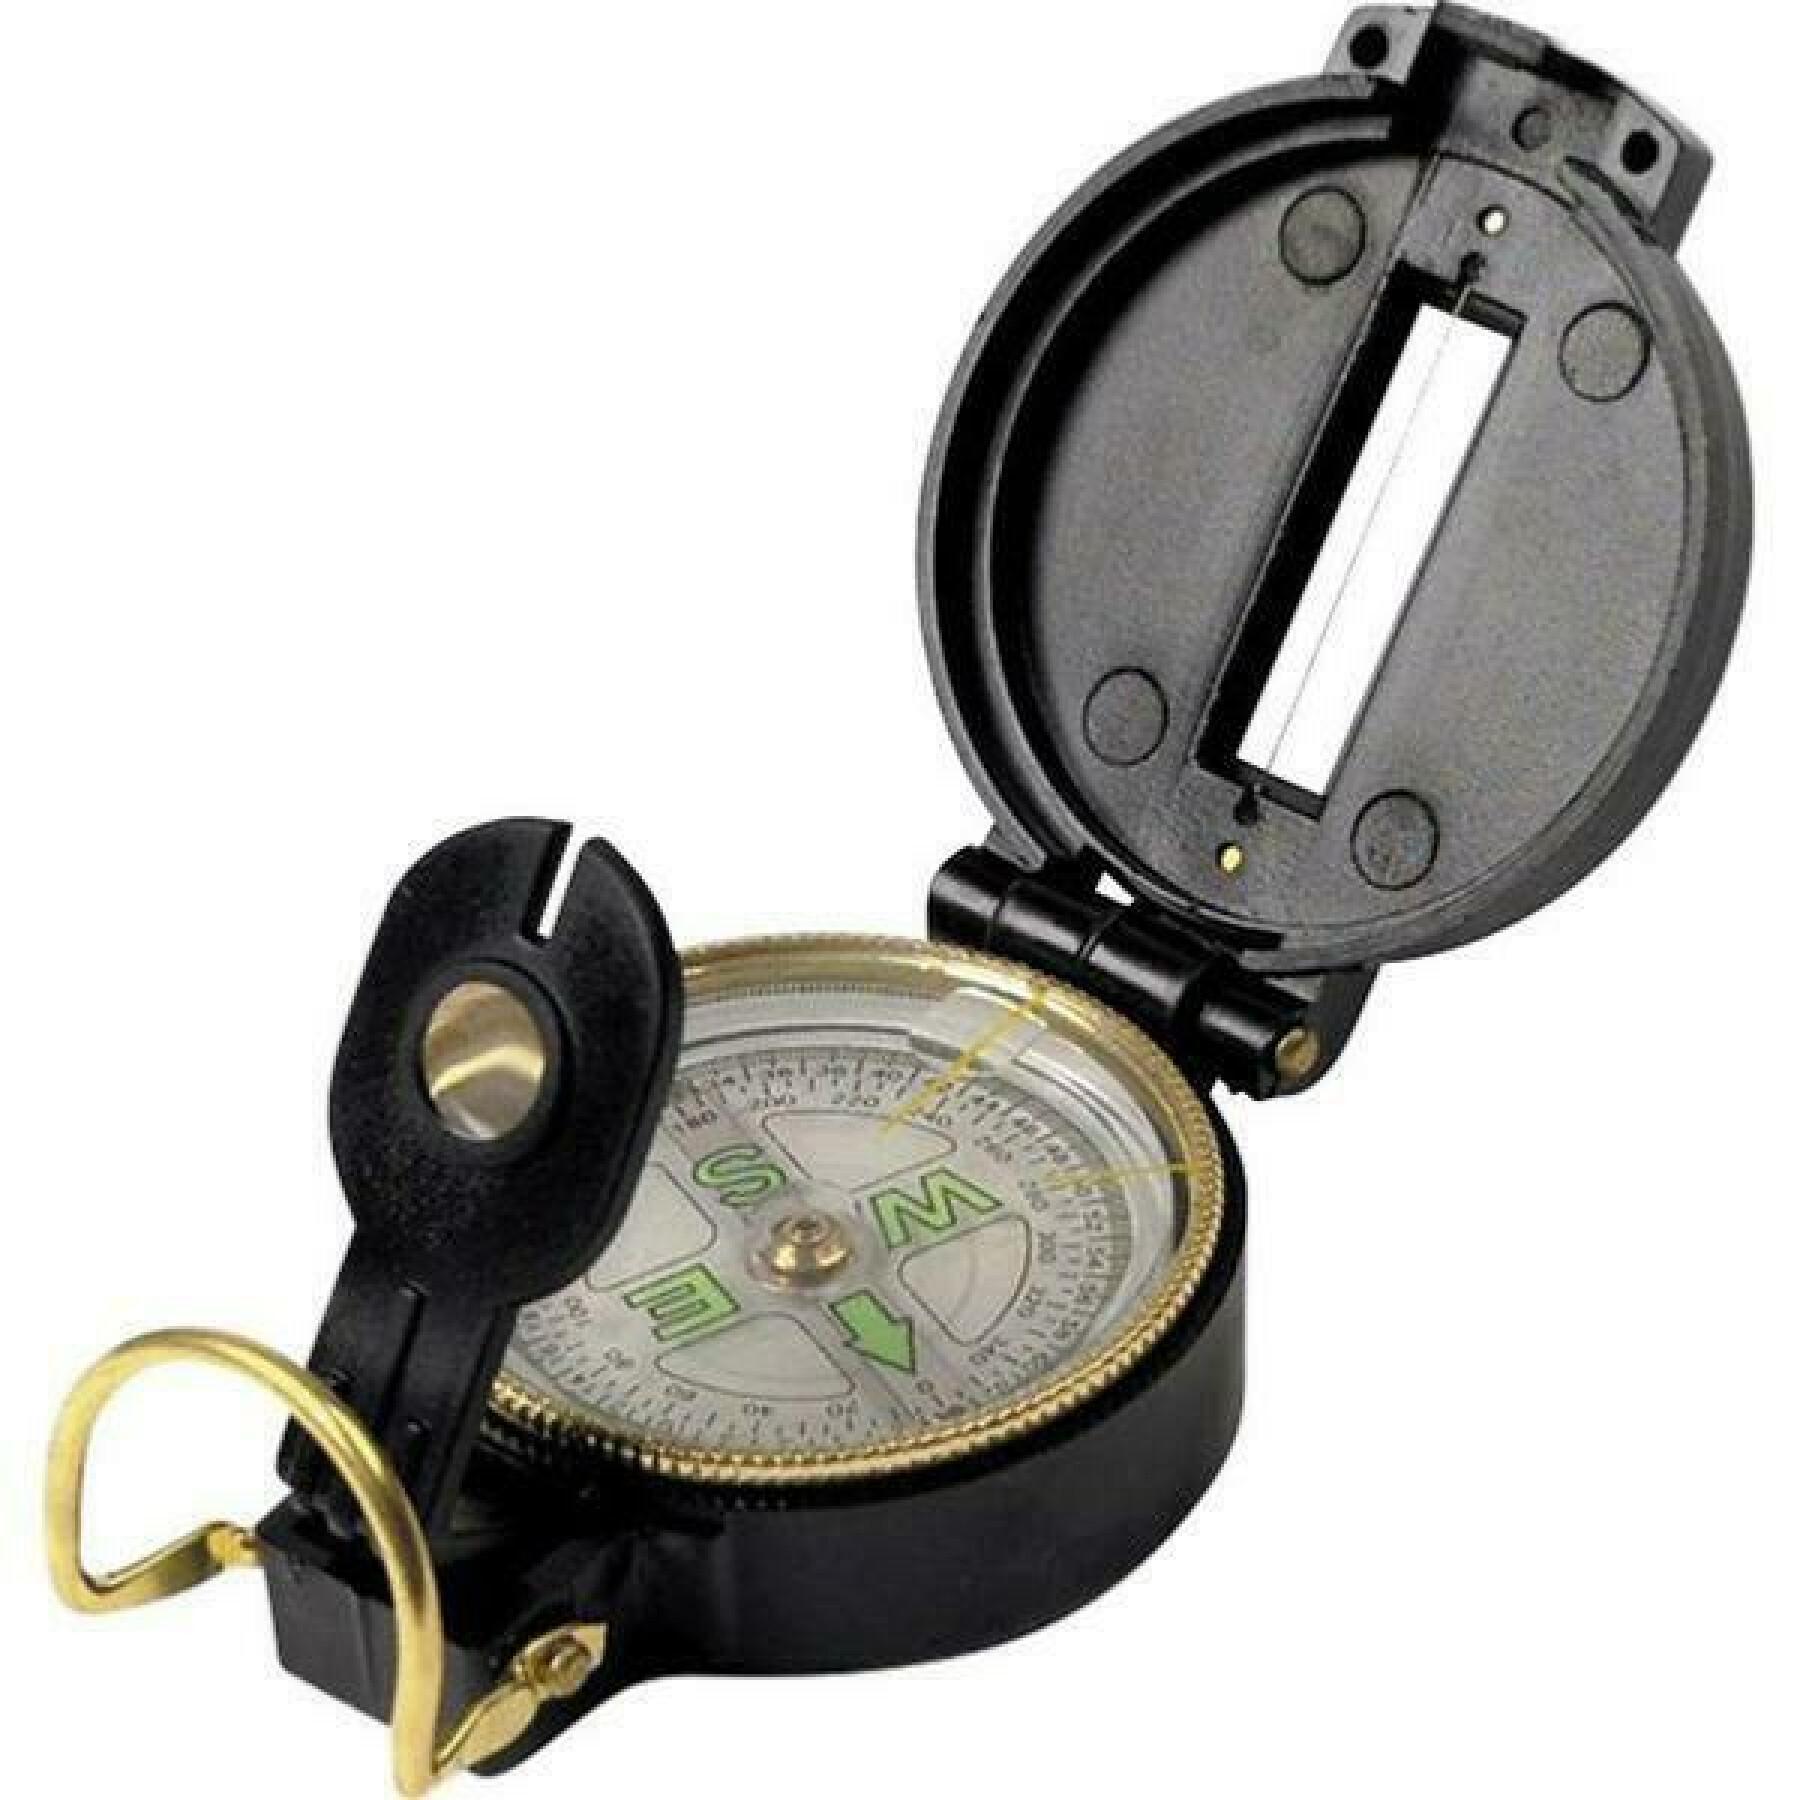 Boussole de randonnée Deluxe Pocket Compass - Highlander - Achat boussoles  pas cher